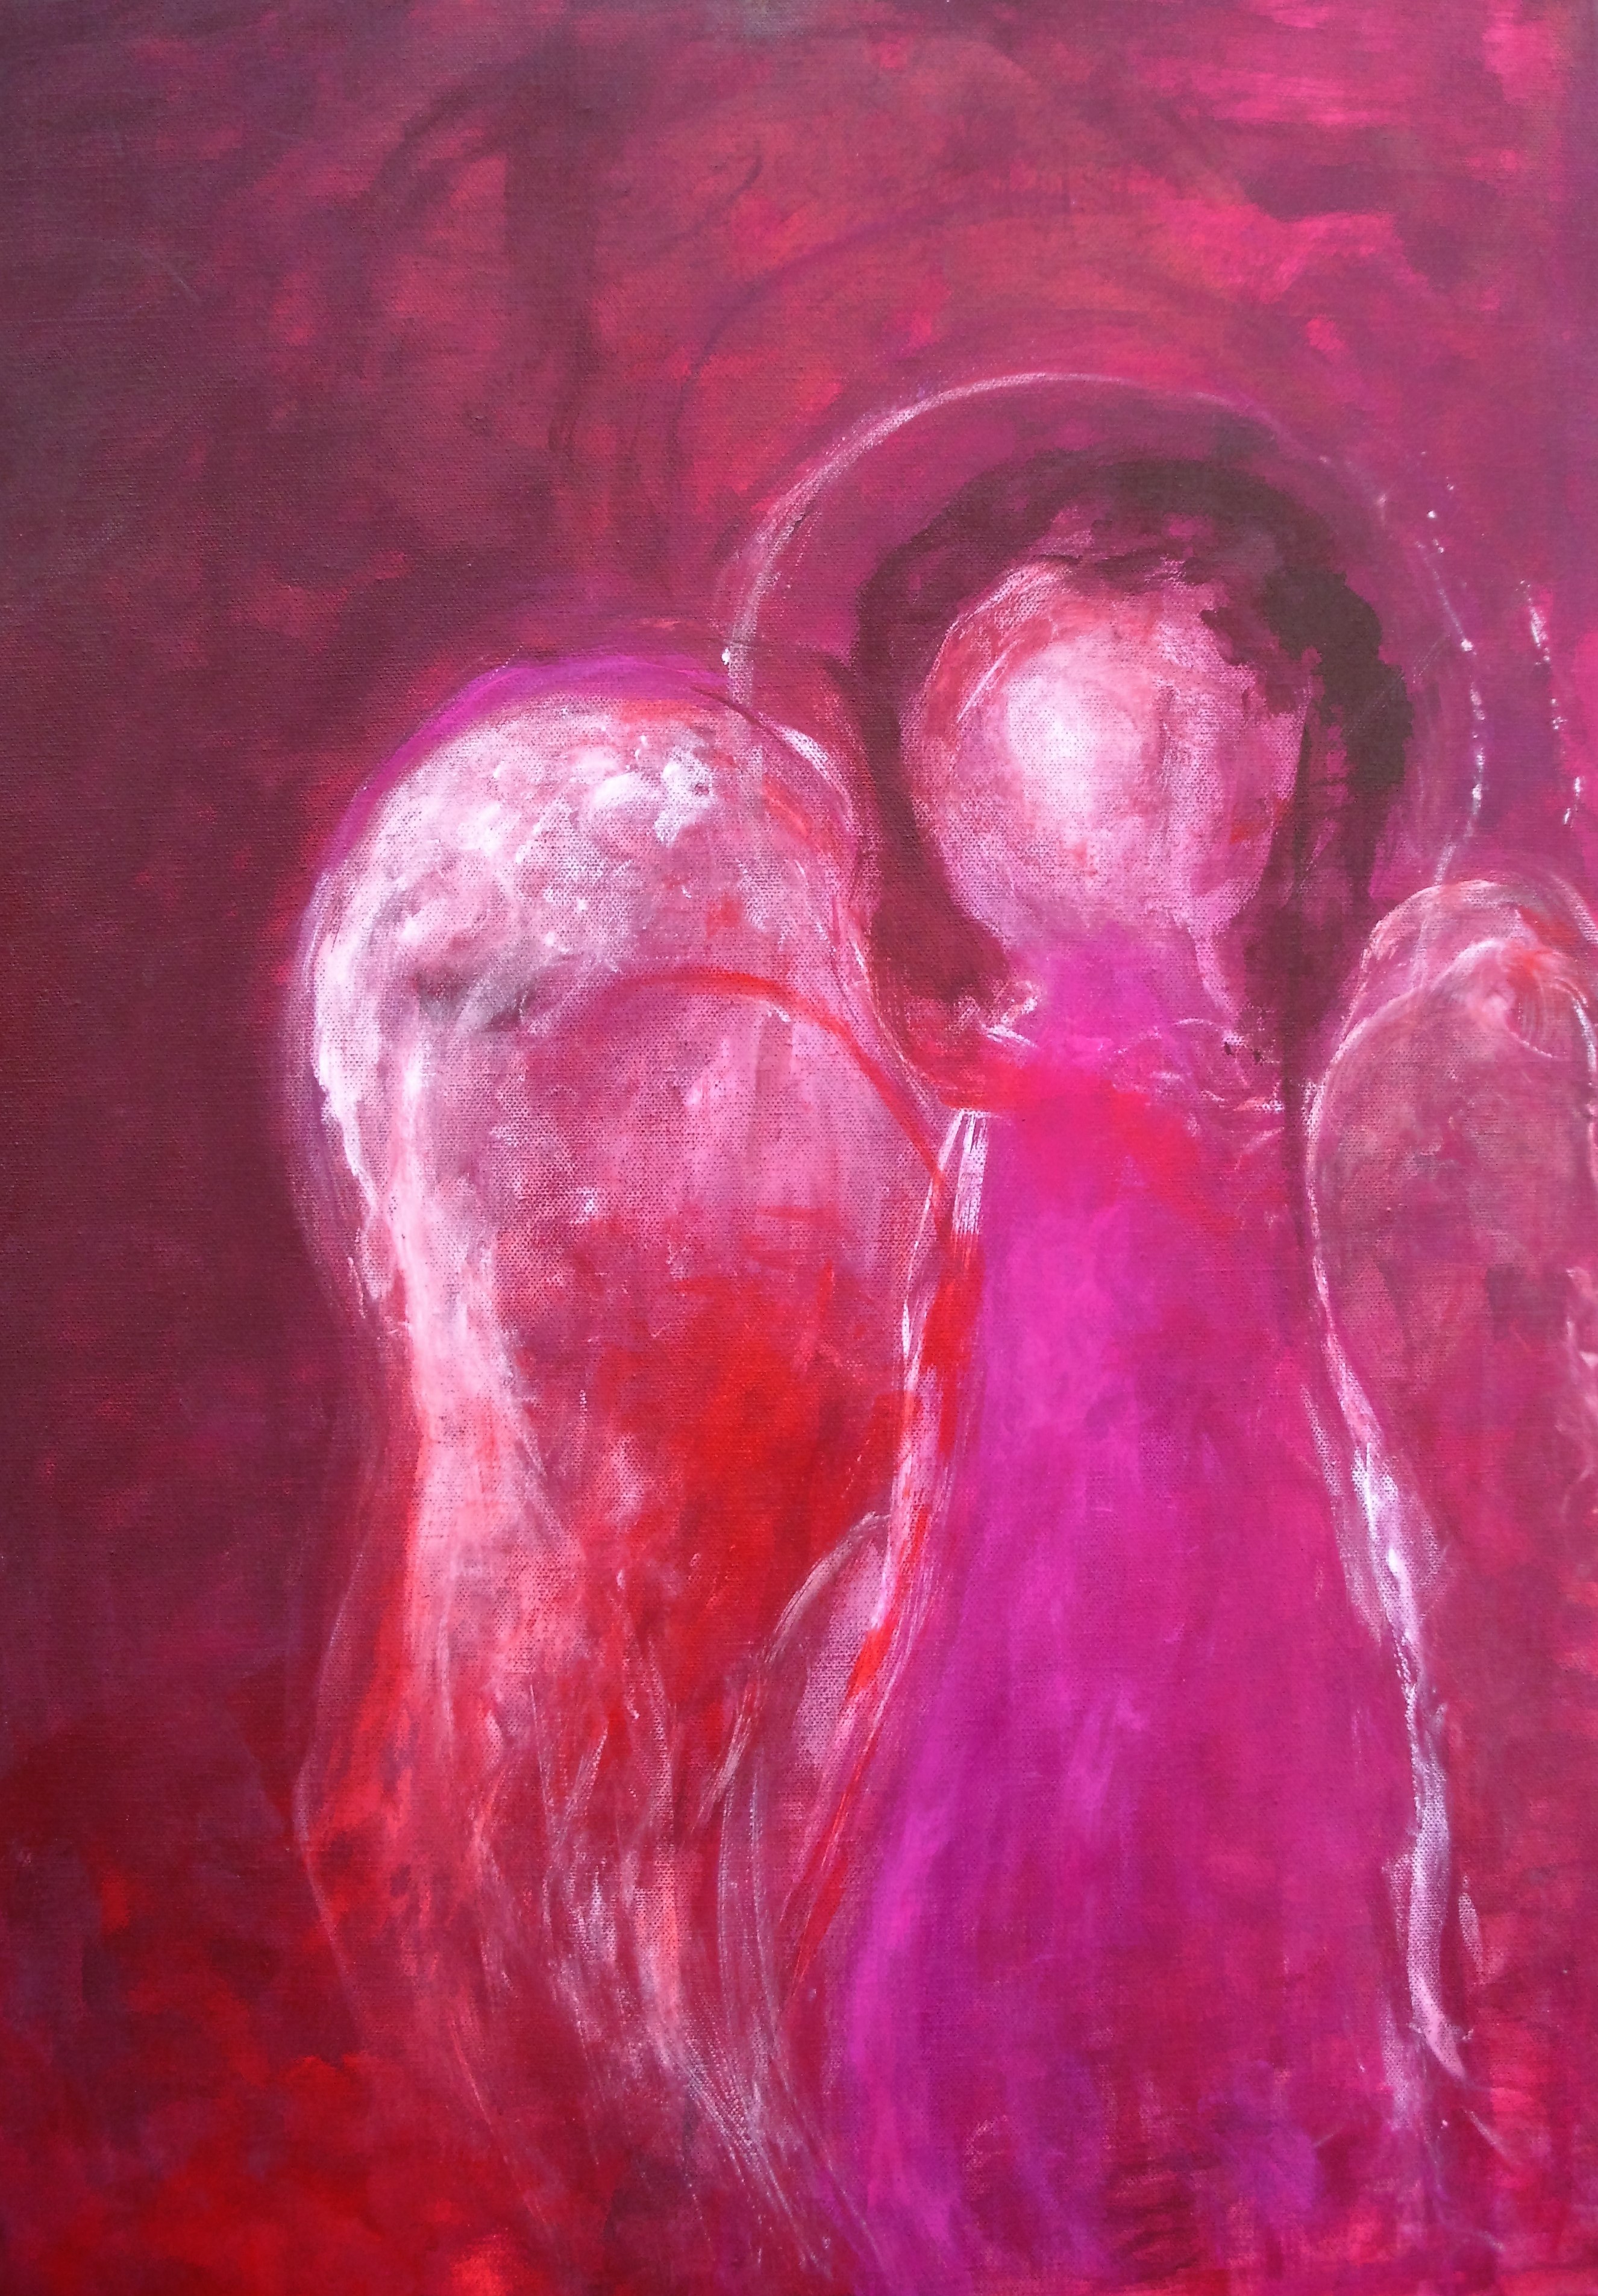 "Engel in Rot", Acryl/Leinwand, 50x70, 2009